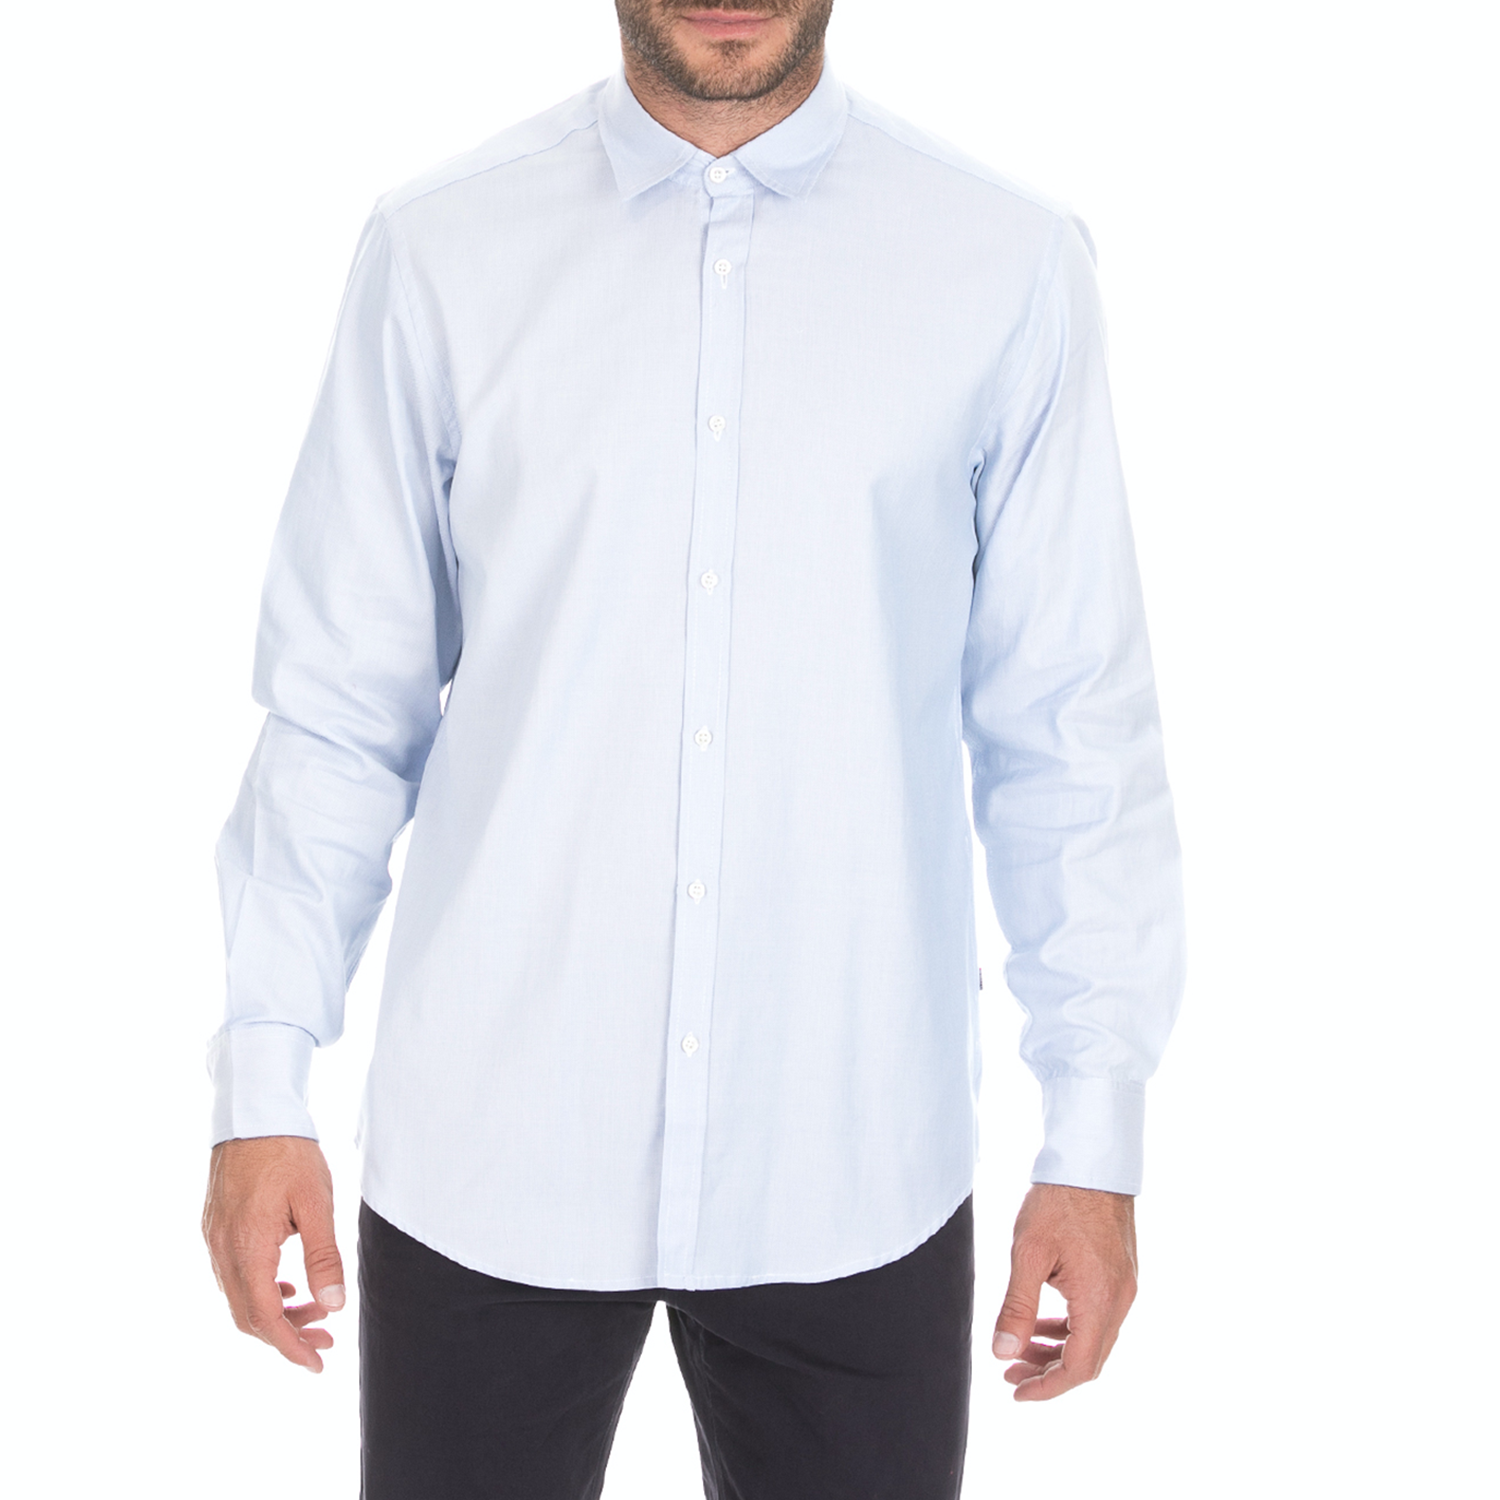 Ανδρικά/Ρούχα/Πουκάμισα/Μακρυμάνικα DORS - Ανδρικό μακρυμάνικο πουκάμισο DORS γαλάζιο